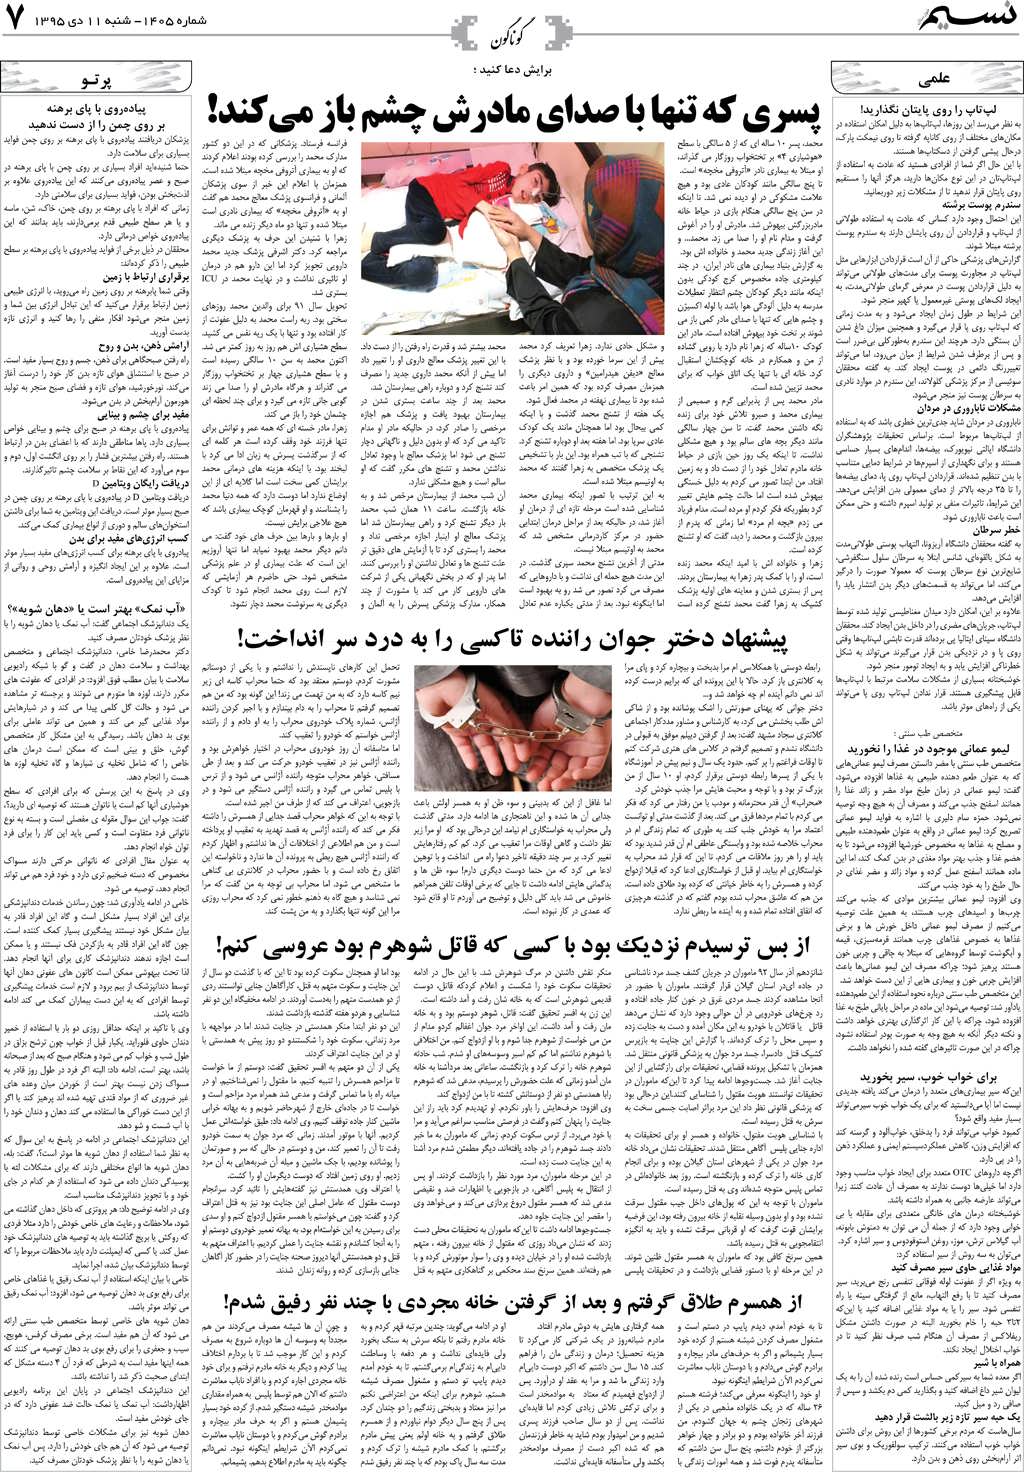 صفحه گوناگون روزنامه نسیم شماره 1405